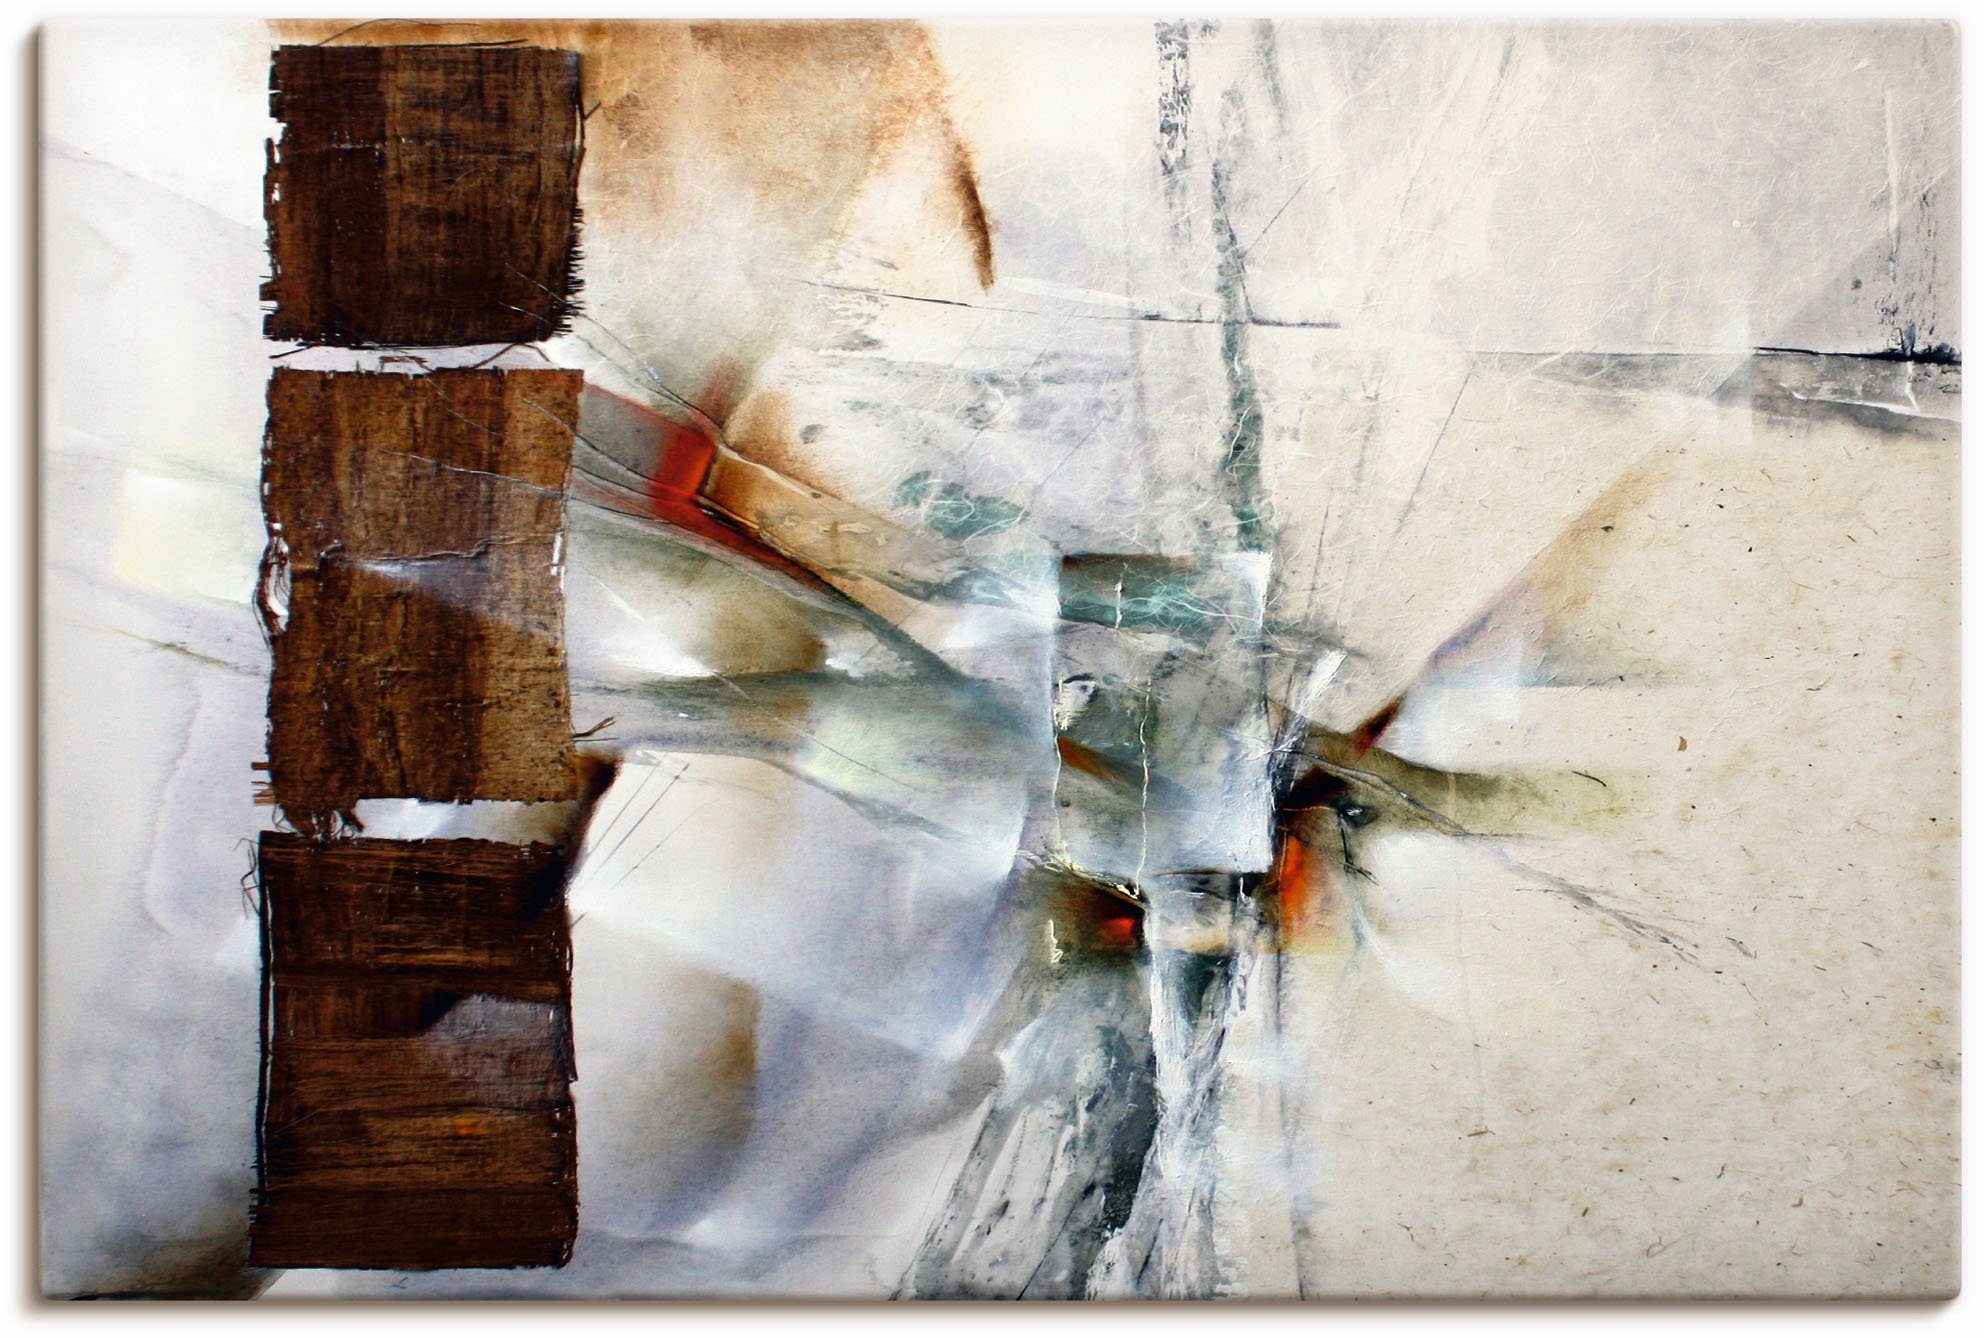 Artland Artprint Abstracte compositie in wit in vele afmetingen & productsoorten - artprint van aluminium / artprint voor buiten, artprint op linnen, poster, muursticker / wandfoli